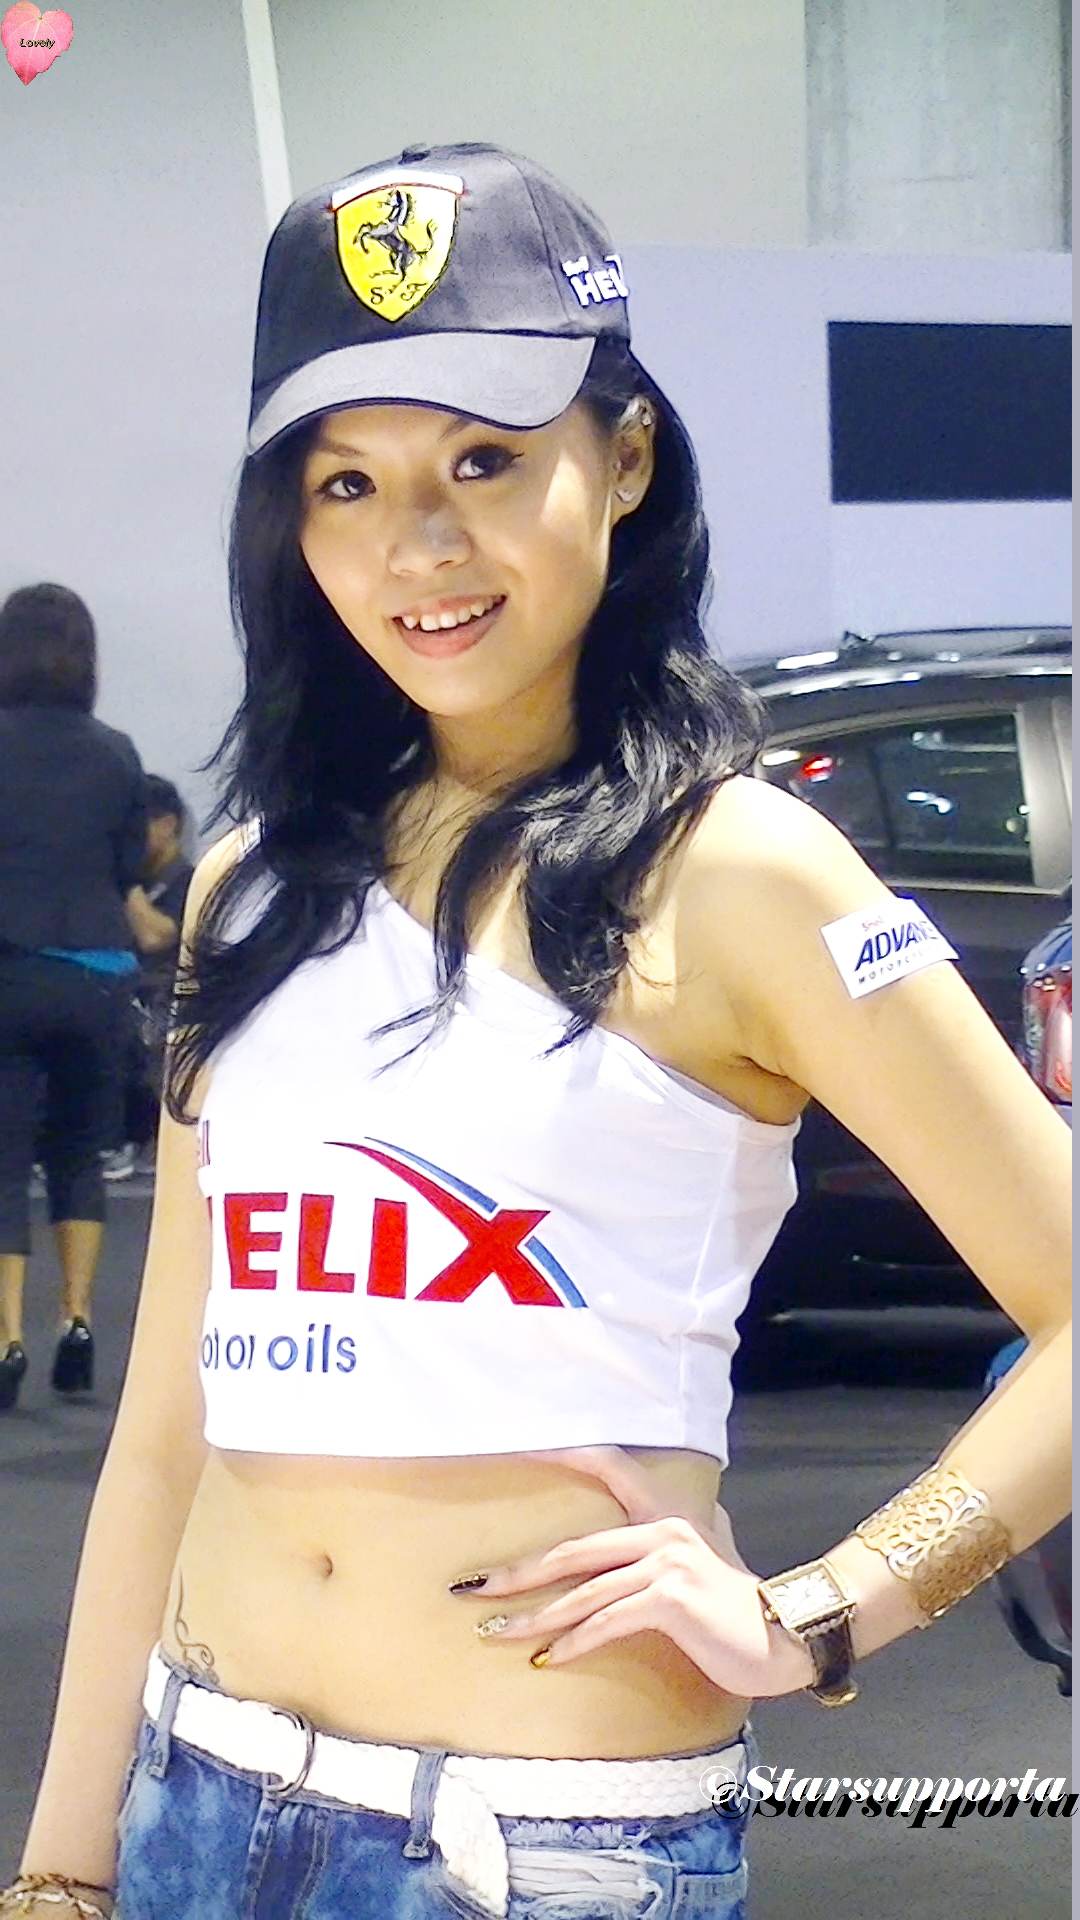 20121026 第二屆中國(澳門)國際汽車博覽會 - Mazda 馬自達 @ 澳門斯尼斯人